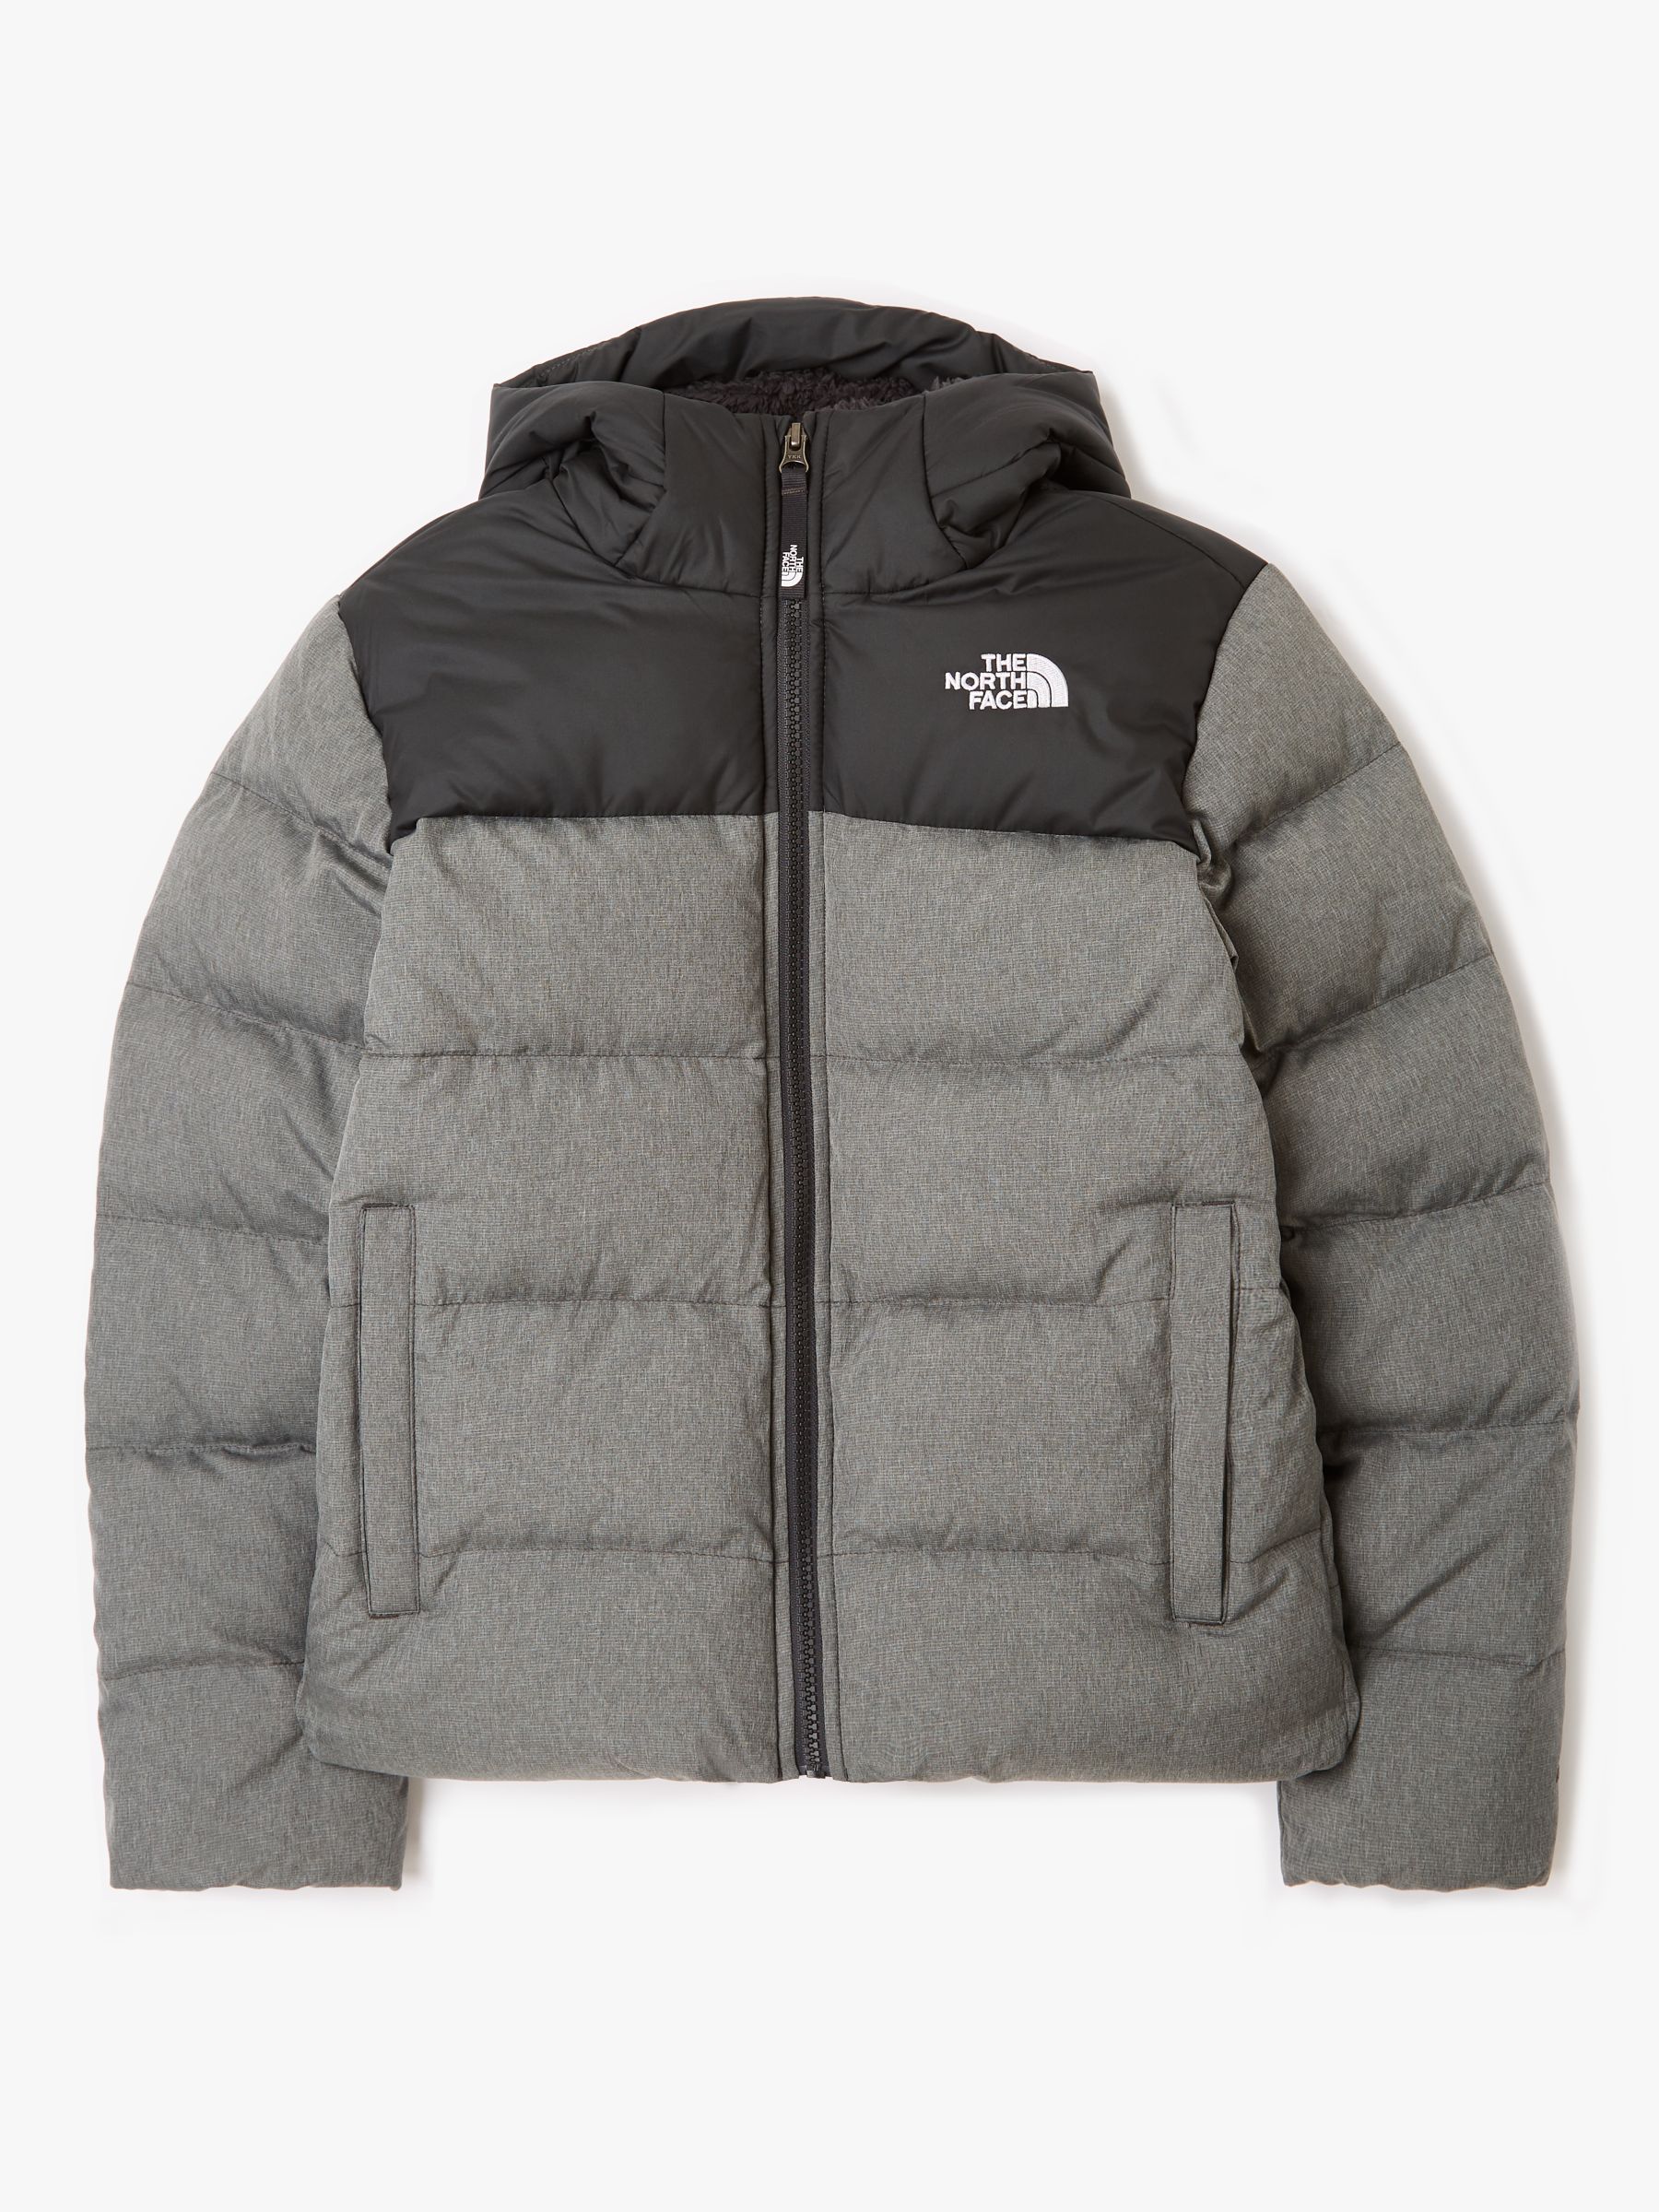 grey northface jacket